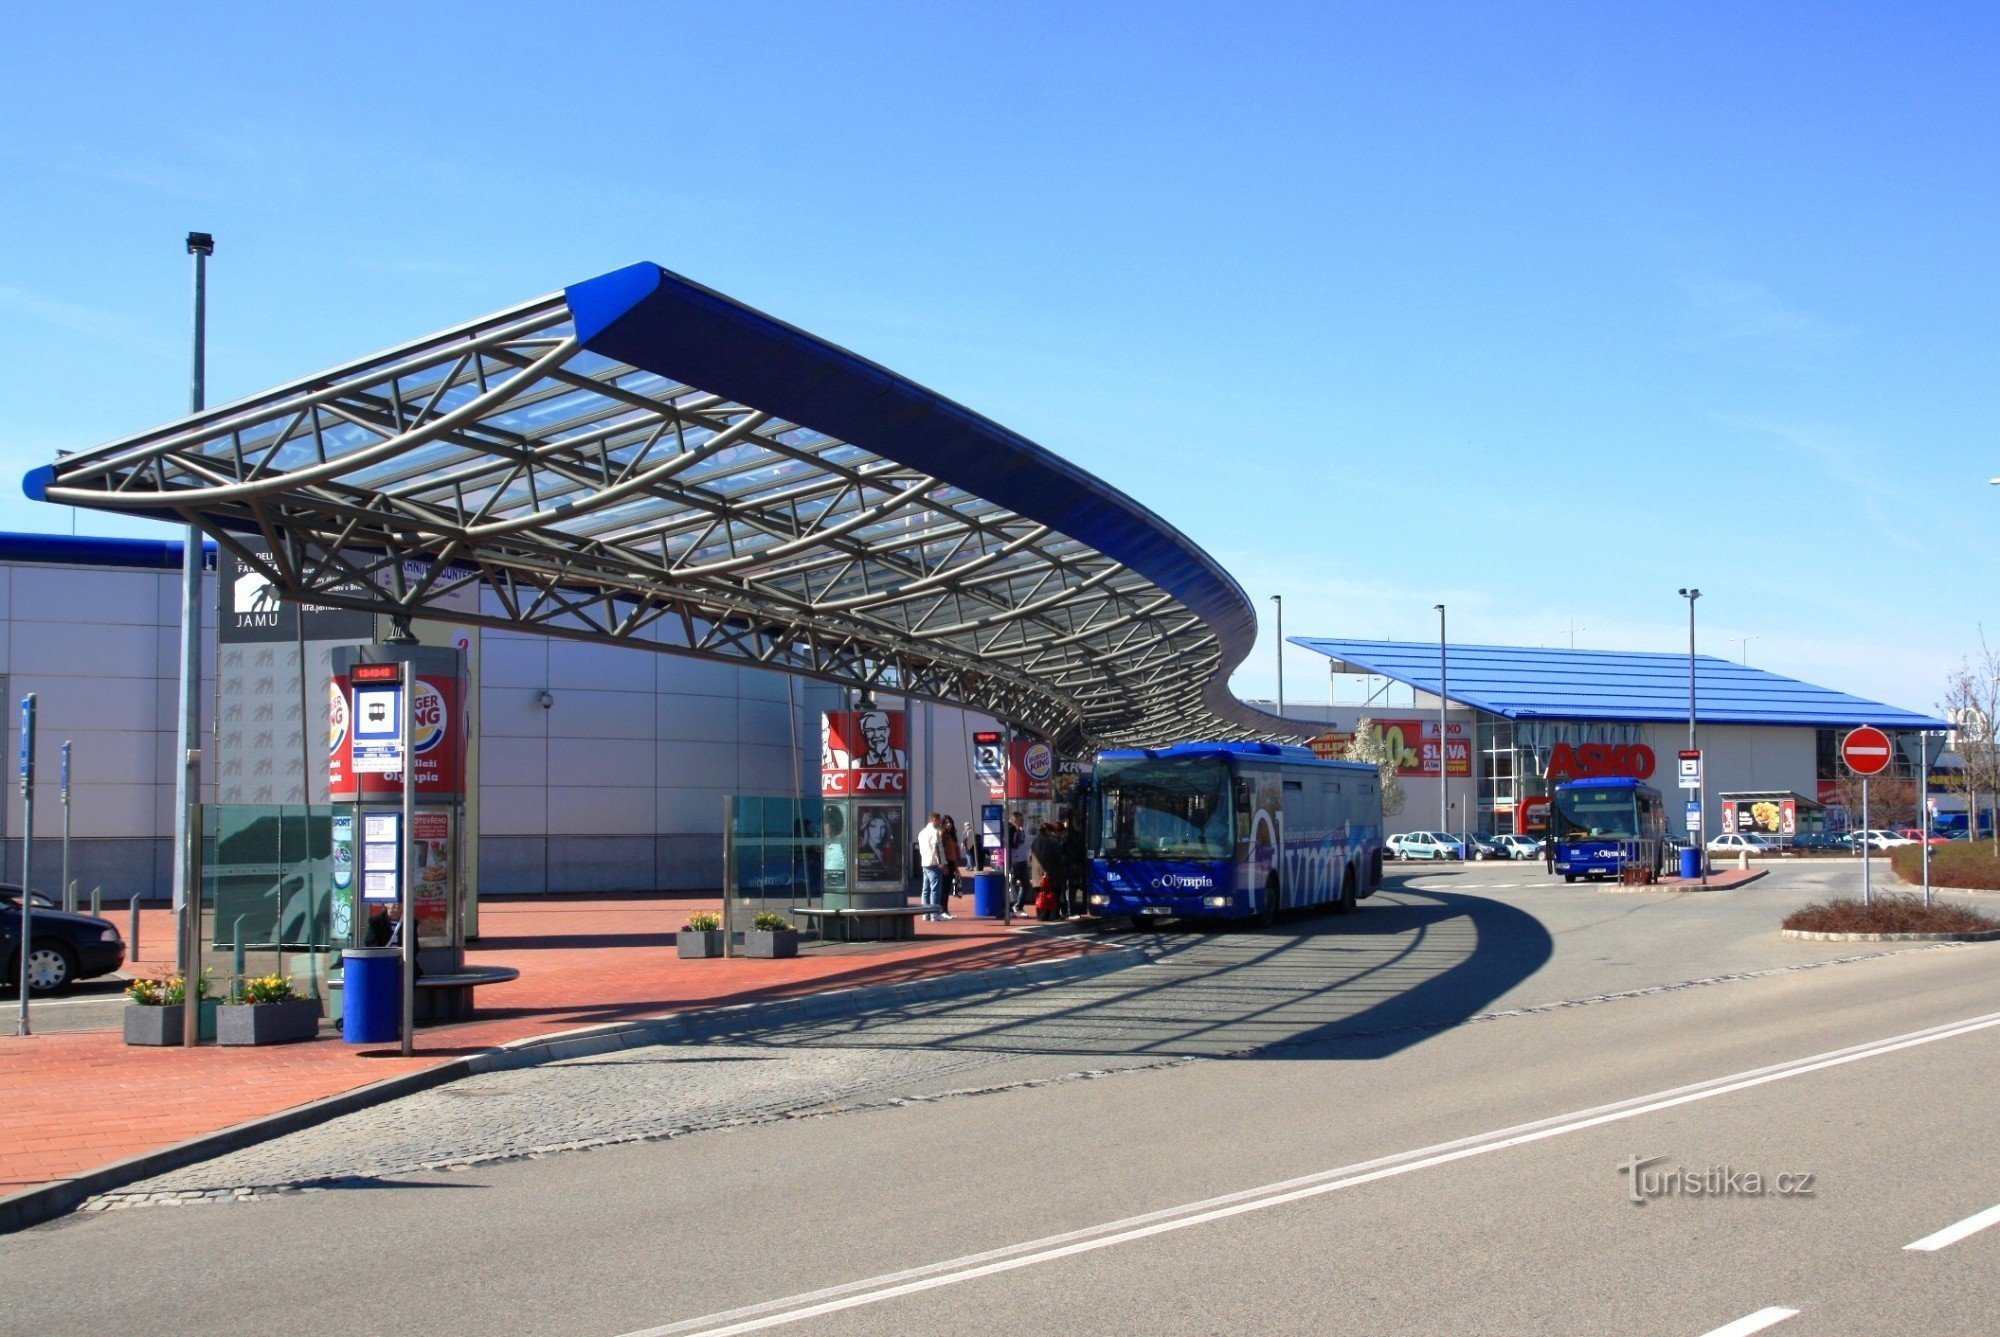 Terminalul de transport Olympia